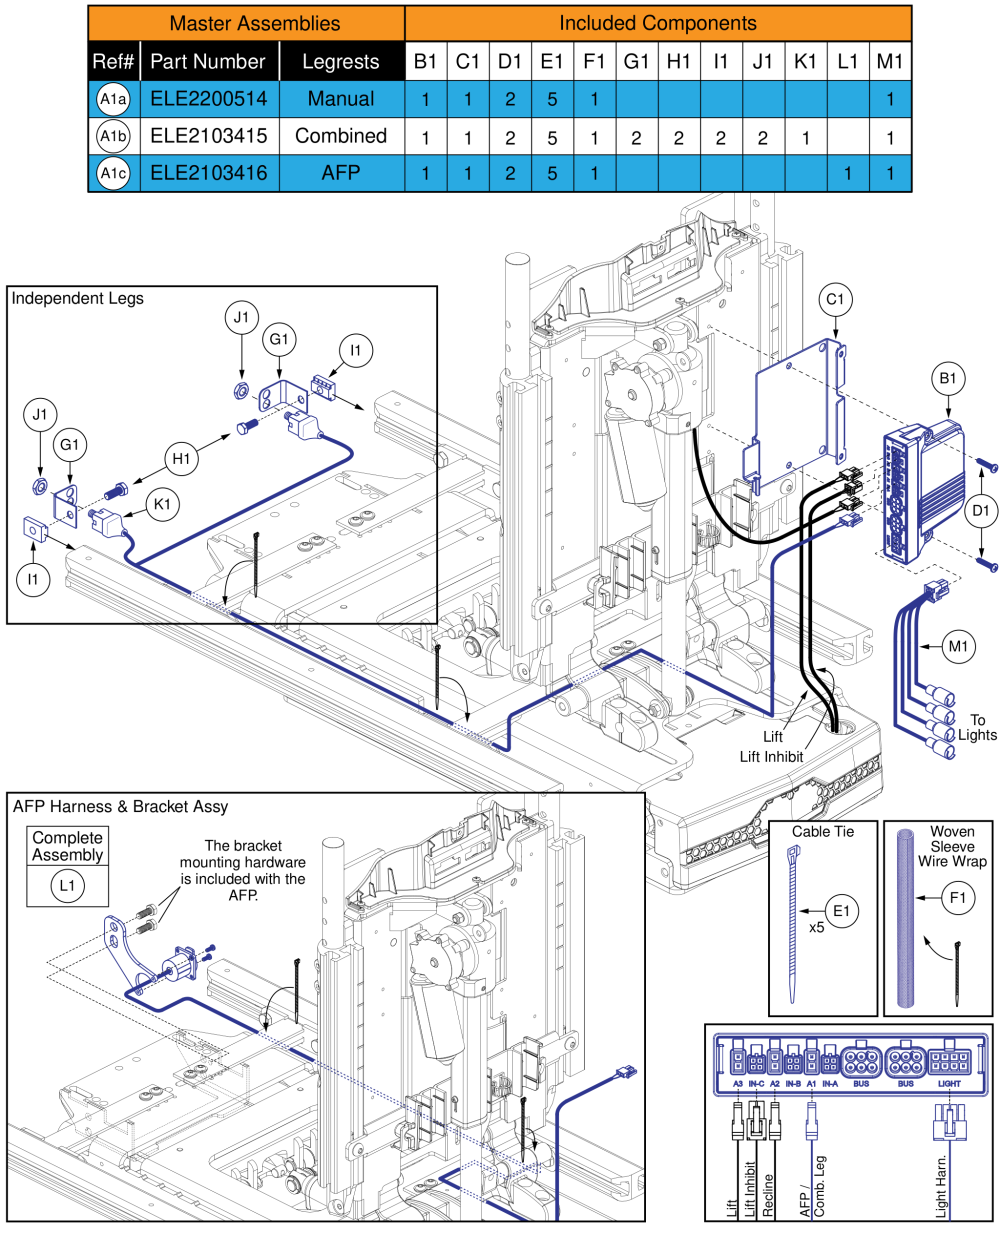 Ql3 Am3l, Tb3 Lift & Recline (4front Series) parts diagram